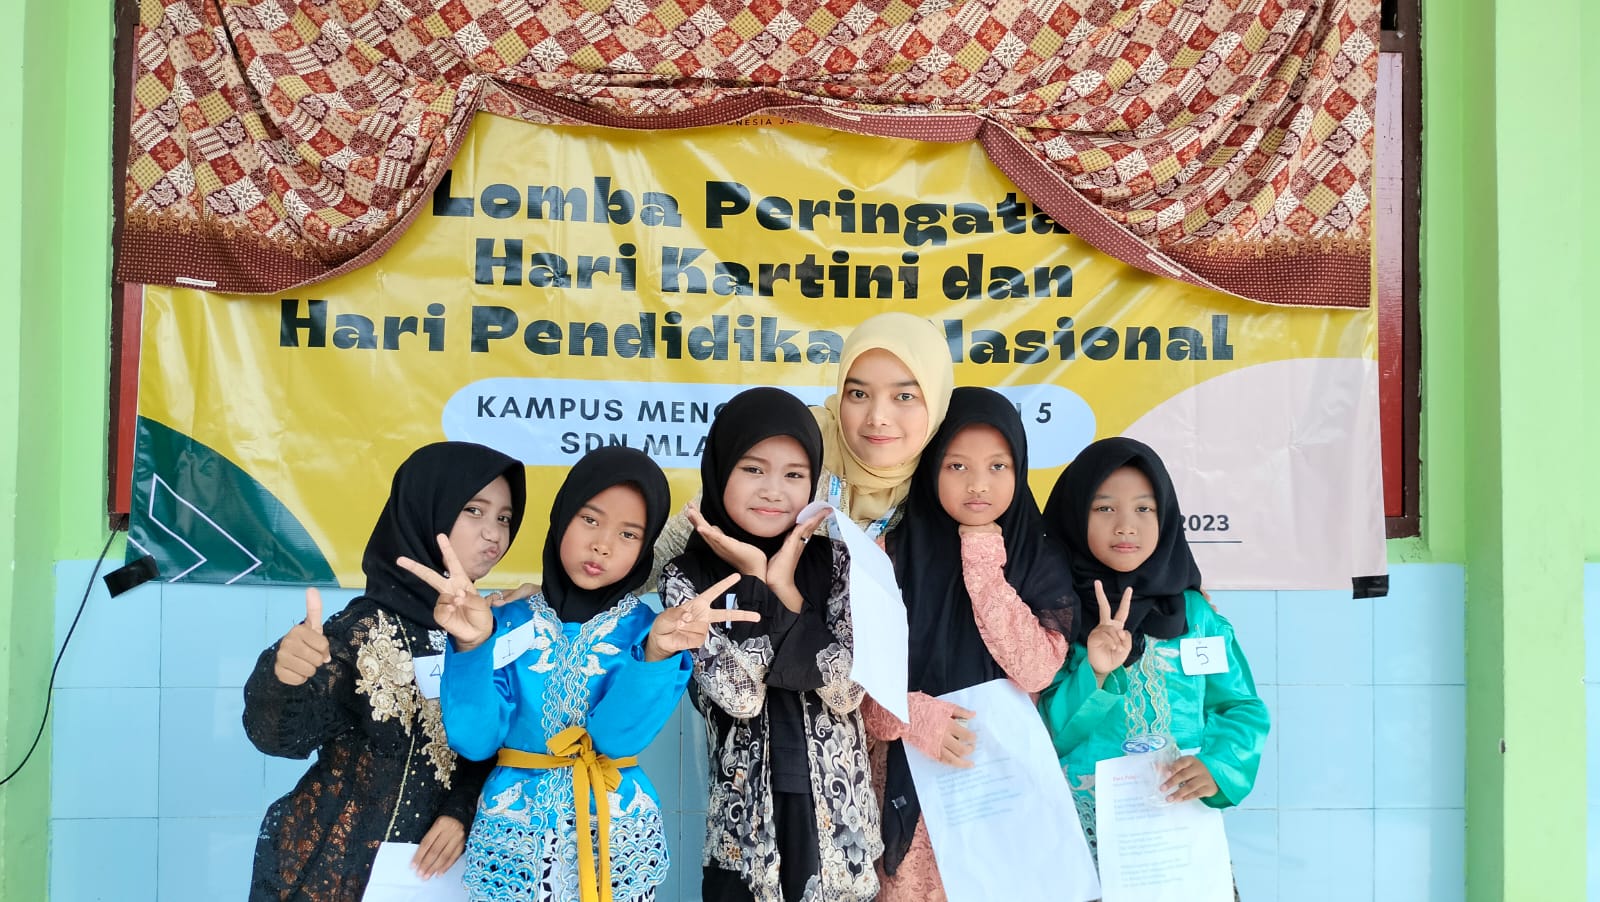 Peringati Hari Kartini dan Hardiknas, Mahasiswa Kampus Mengajar Adakan Lomba di SDN Mlangi 02, Widang, Tuban